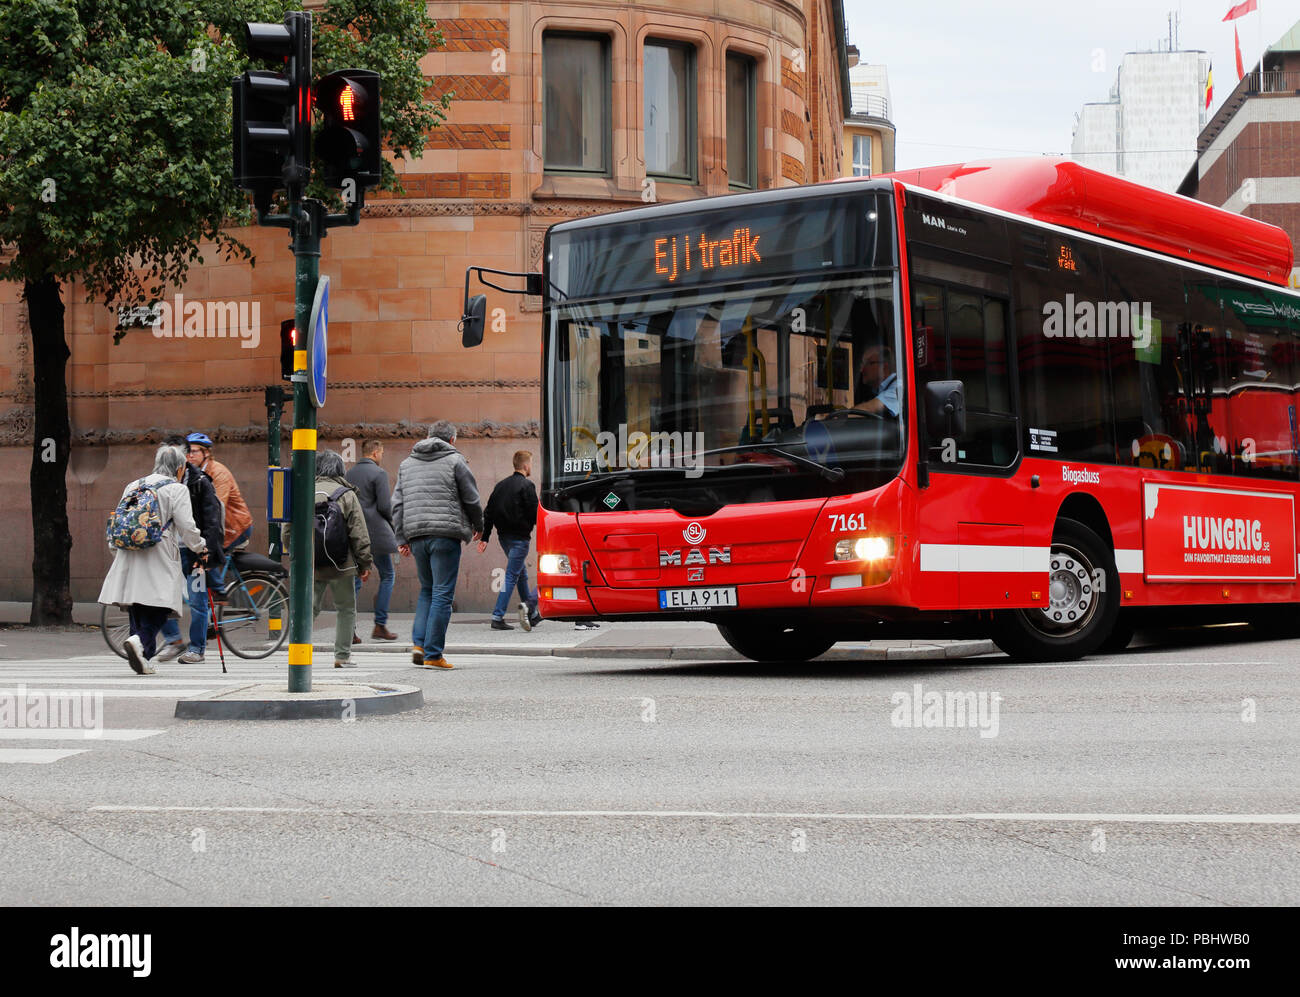 Stockholm, Schweden - 8. September 2017: Eine öffentliche Verkehrsmittel Bus, die nicht in Dienst sind, drehen in die Straße von der Straße aus Vasagatanm Mastersamuelsgatan. Stockfoto